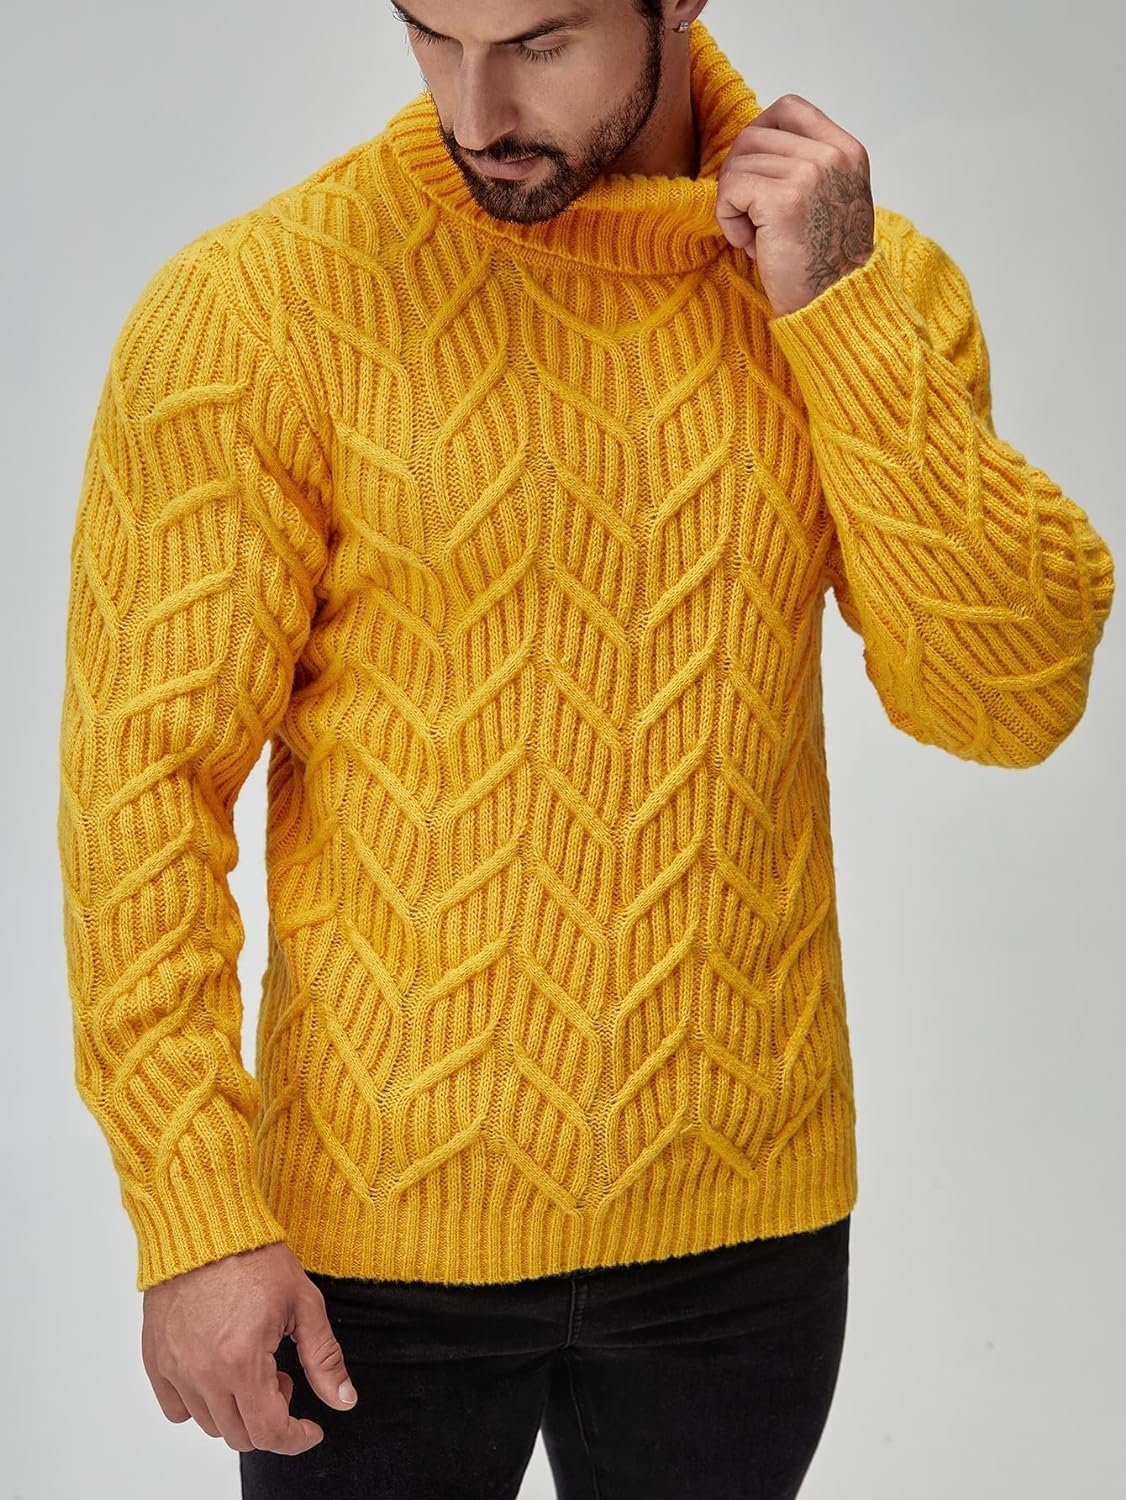 Желтый мужской свитер. Схема узора